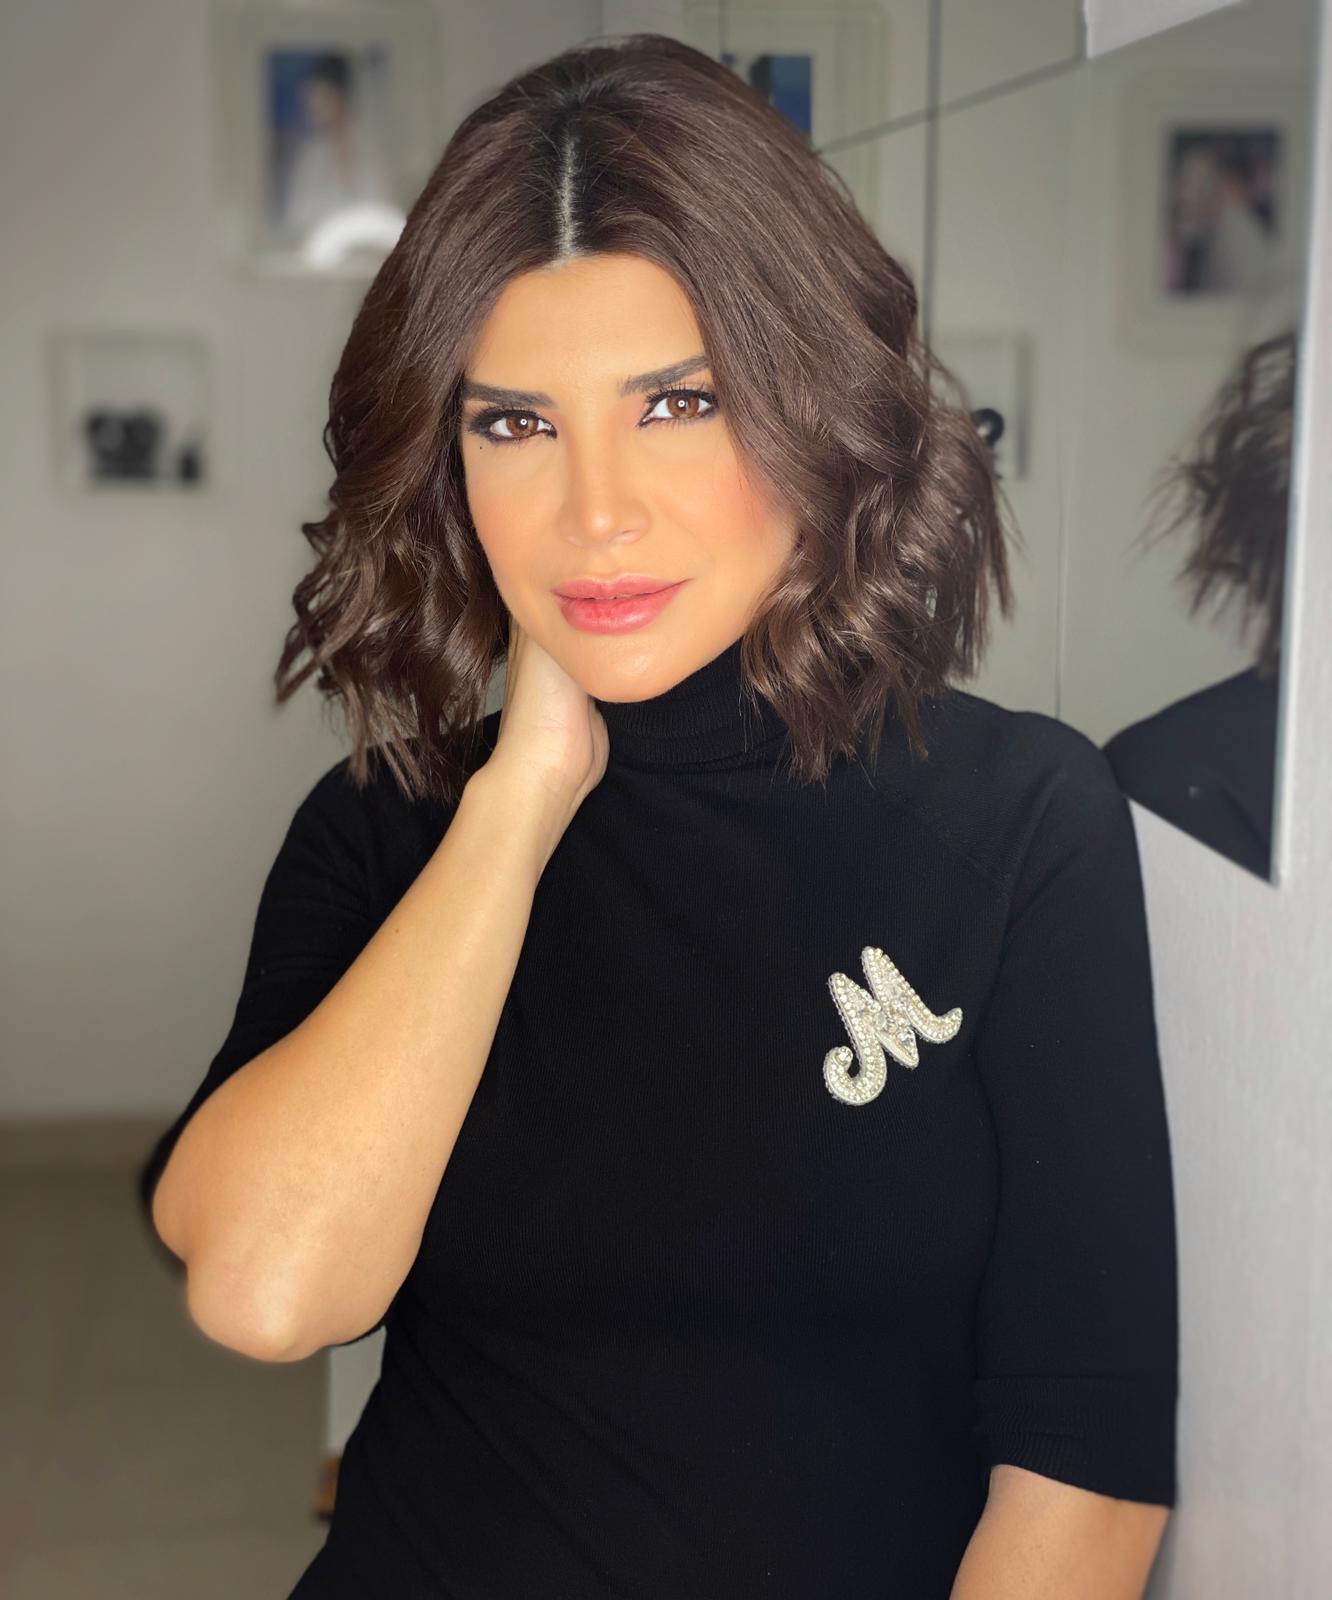 مريان القزي إعلامية لبنانية ومقدمة برامج في مجموعة beIN الإعلامية